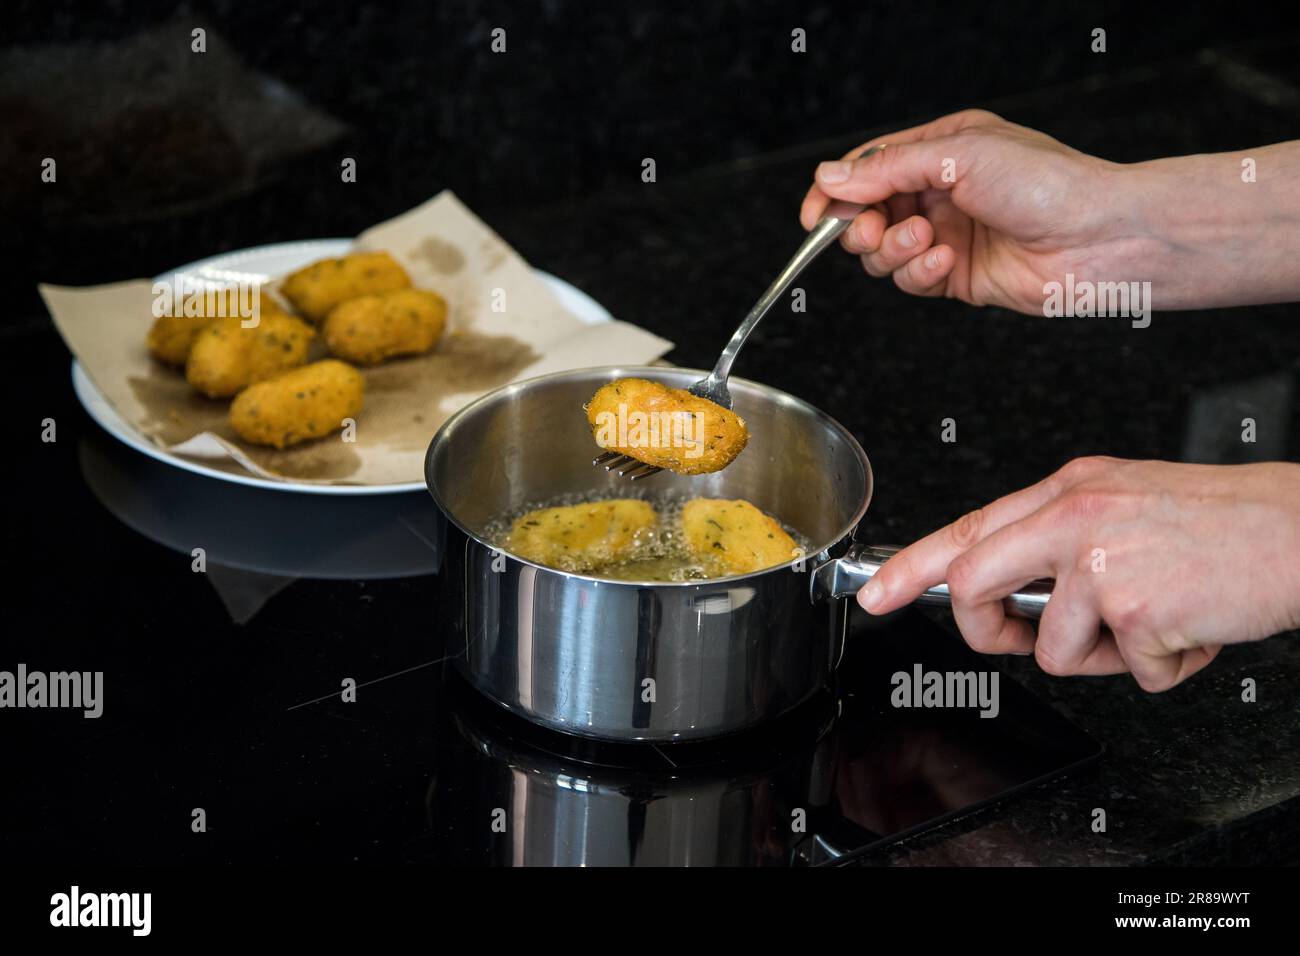 Kabeljauknödel oder „Bolinhos de bacalhau“, sehr berühmt in der portugiesischen Gastronomie. Eine Person in der Küche, die Kabeljau-Fritters brät. Vorbereitungsmodus. Stockfoto